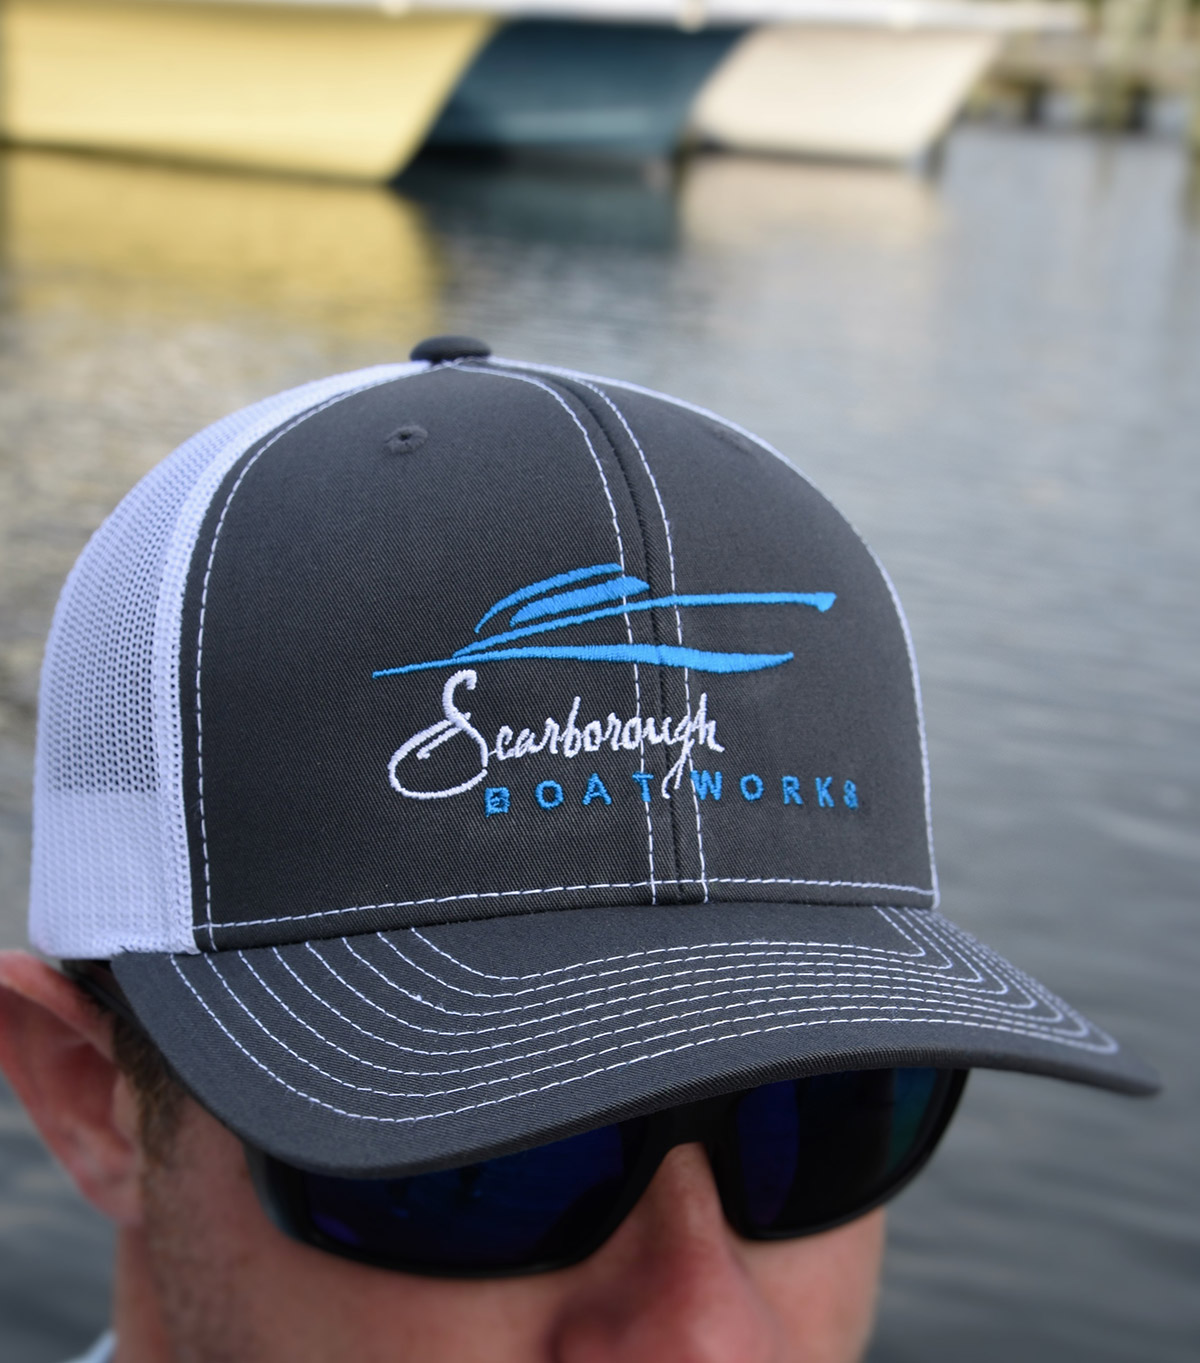 scarborough-boatworks-merchandise-GAL_6000-trucker-hat